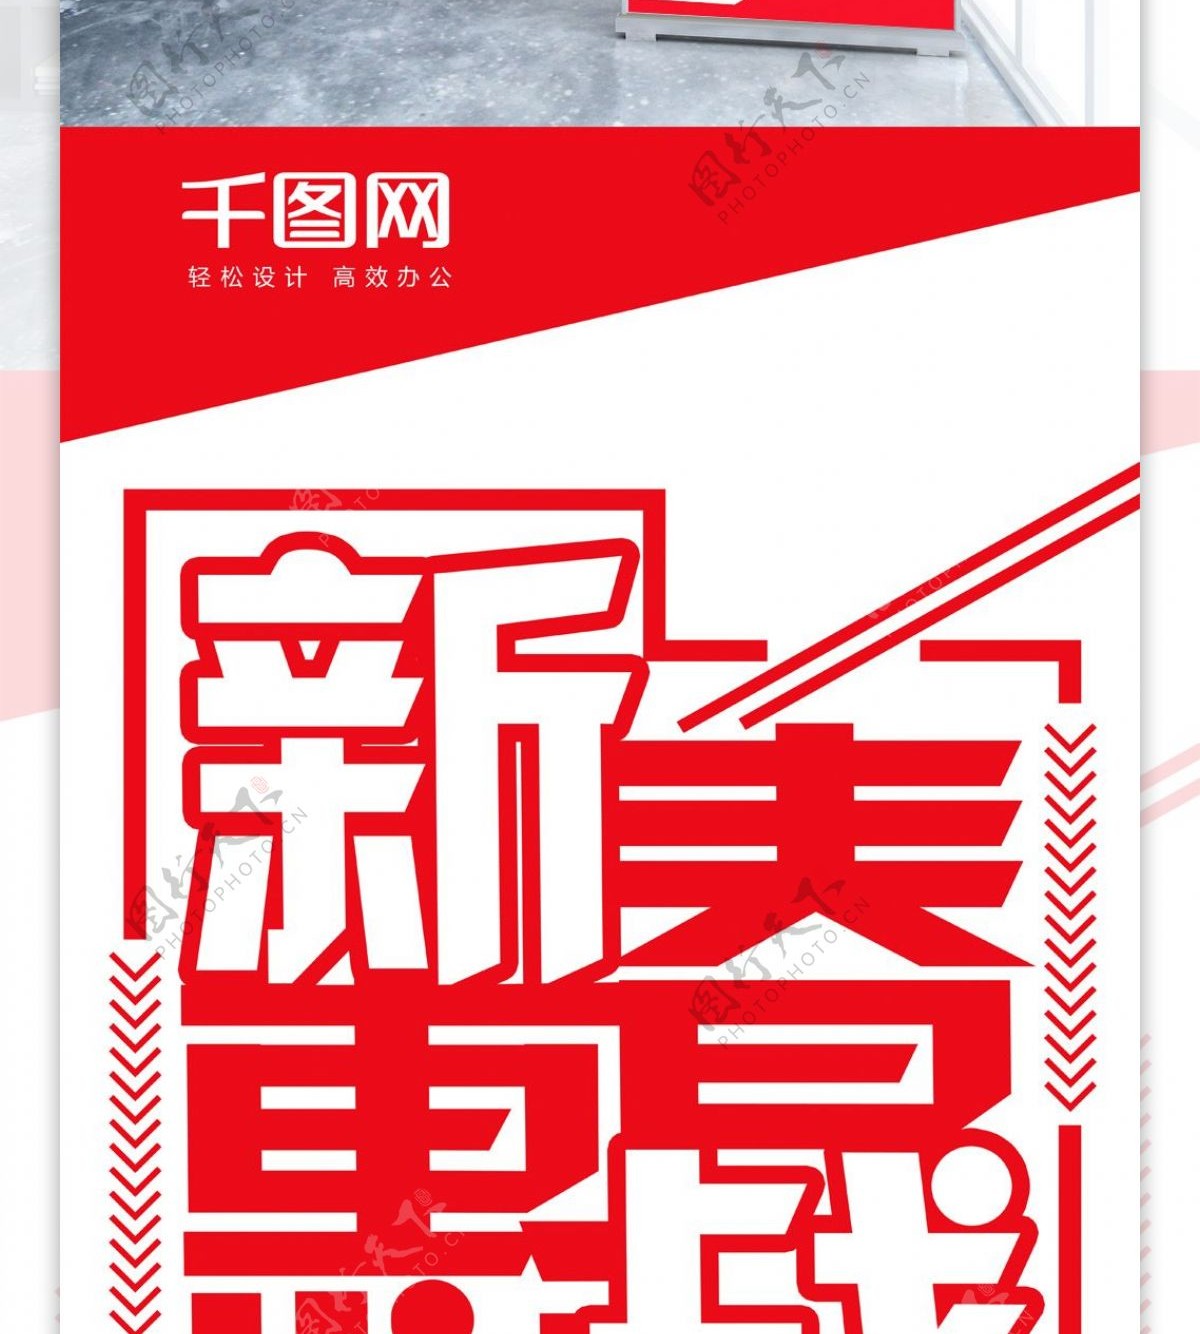 创意字体新春惠战促销展架设计psd模板